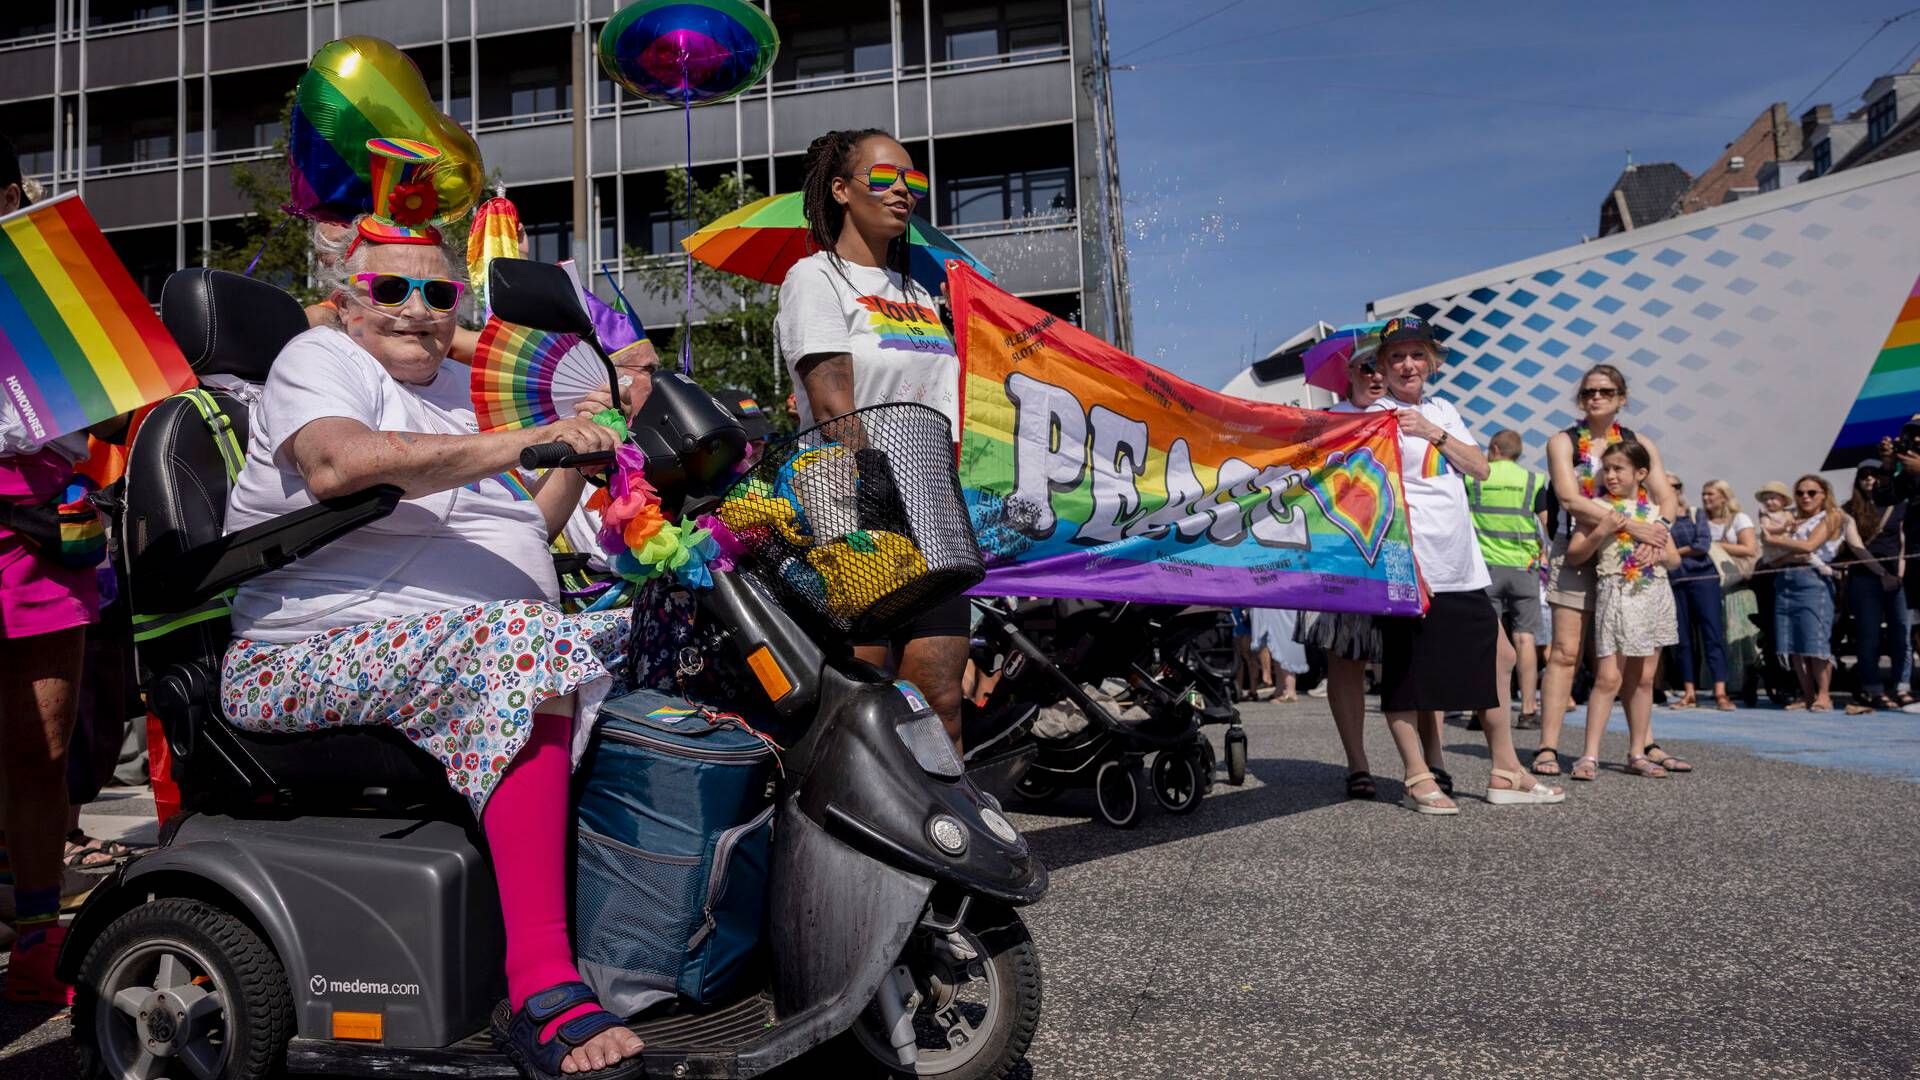 7-Eleven har været sponsor af Copenhagen Pride siden 2014. | Foto: Mads Nissen/Ritzau Scanpix